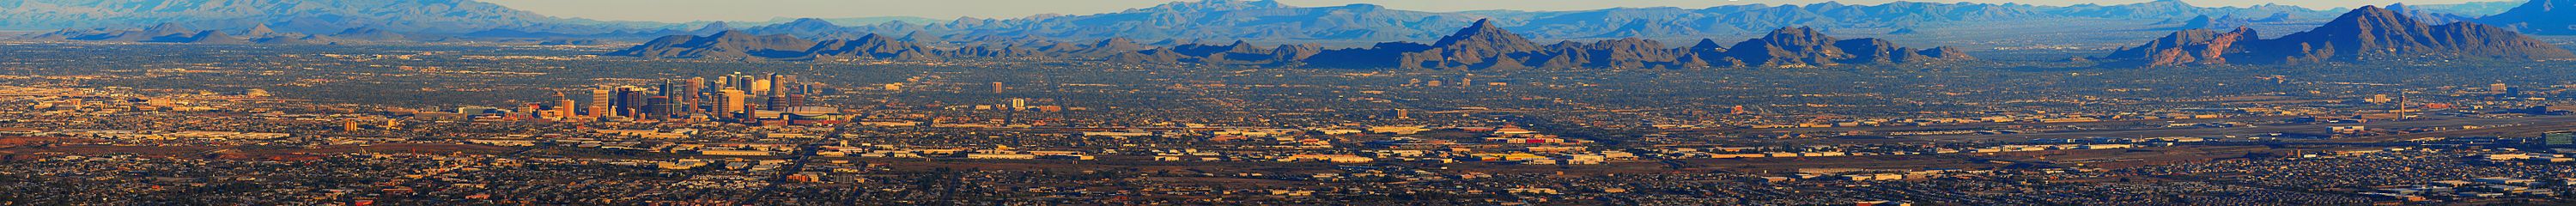 Una vista panorámica de Phoenix desde la Cordillera Sur, invierno de 2008  